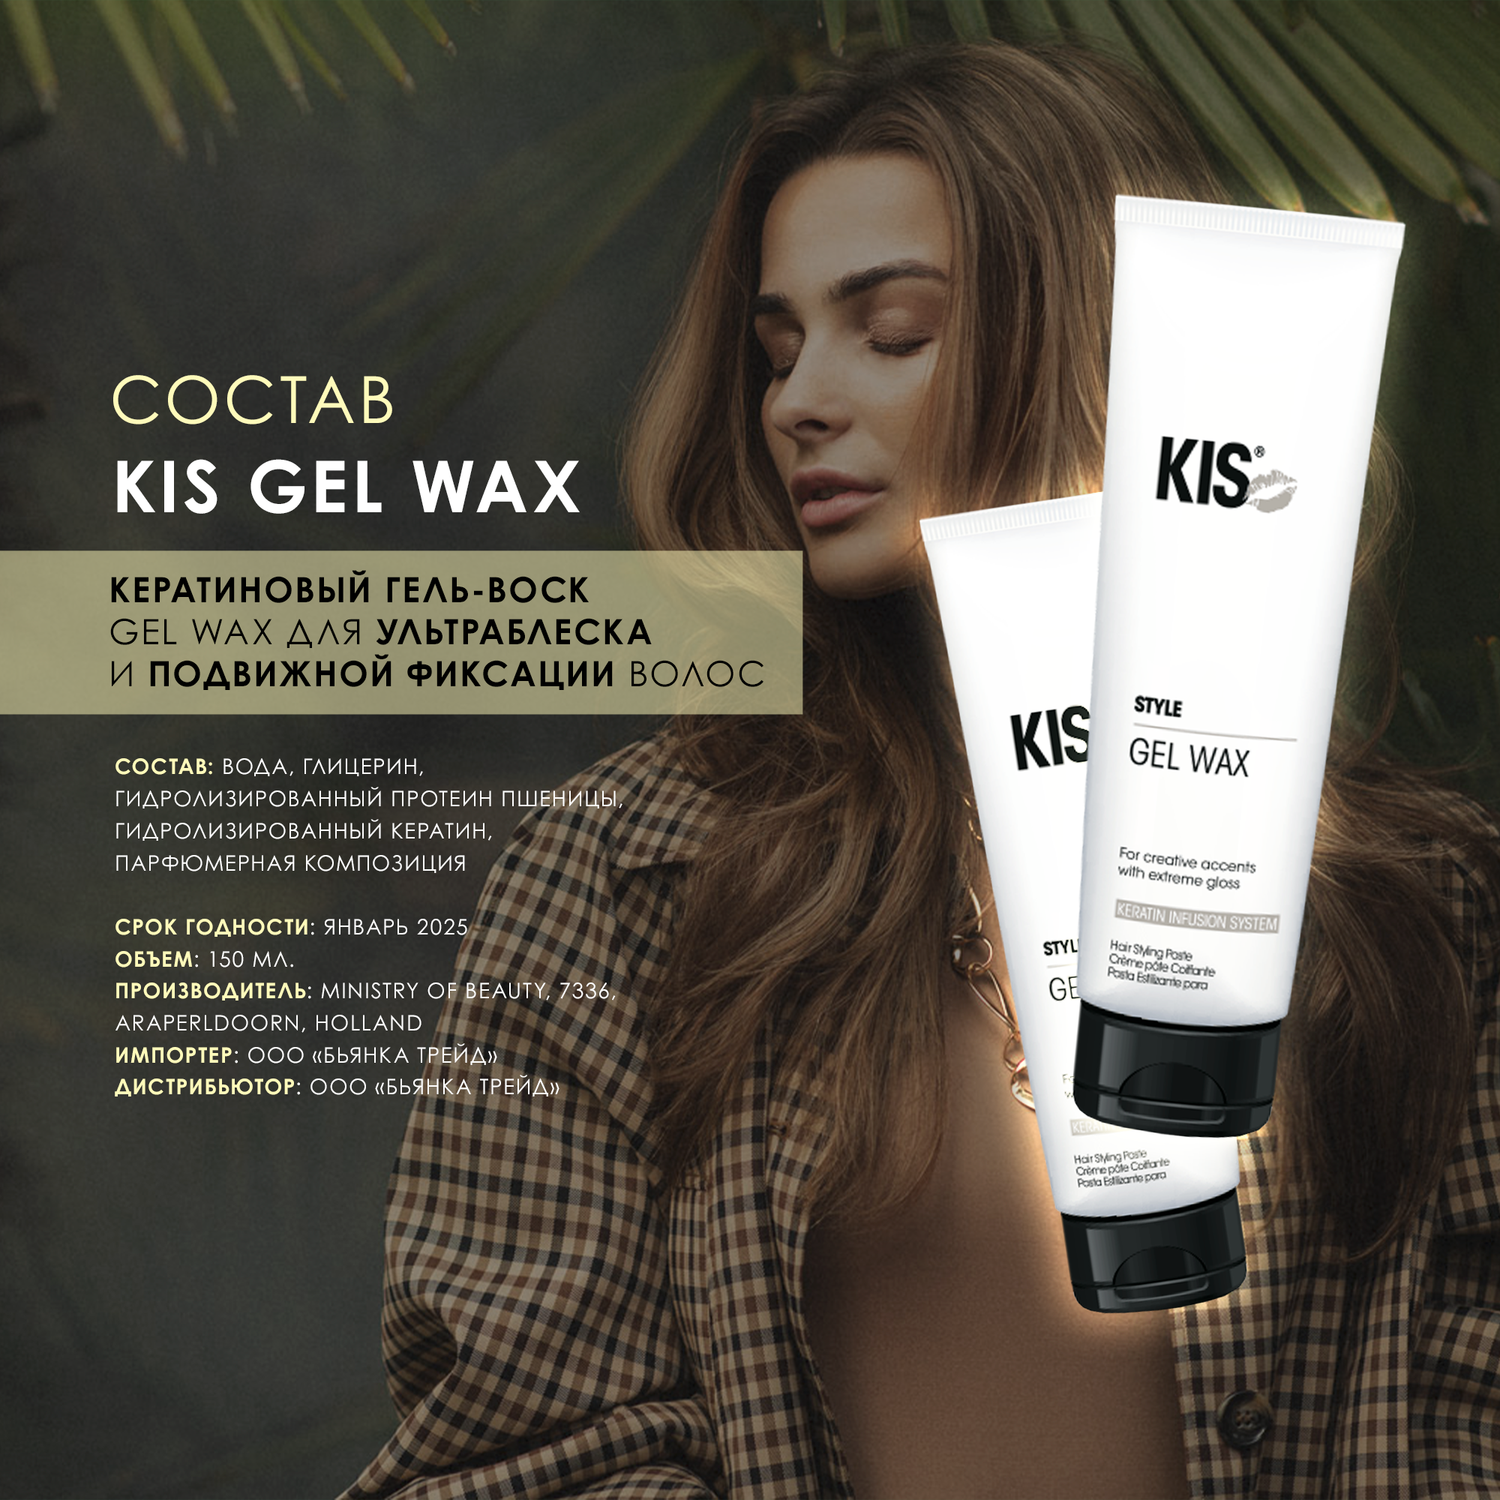 Гель для укладки KIS Kis gel wax – гель-воск для подвижной укладки локонов в стиле «beach waves» - фото 3